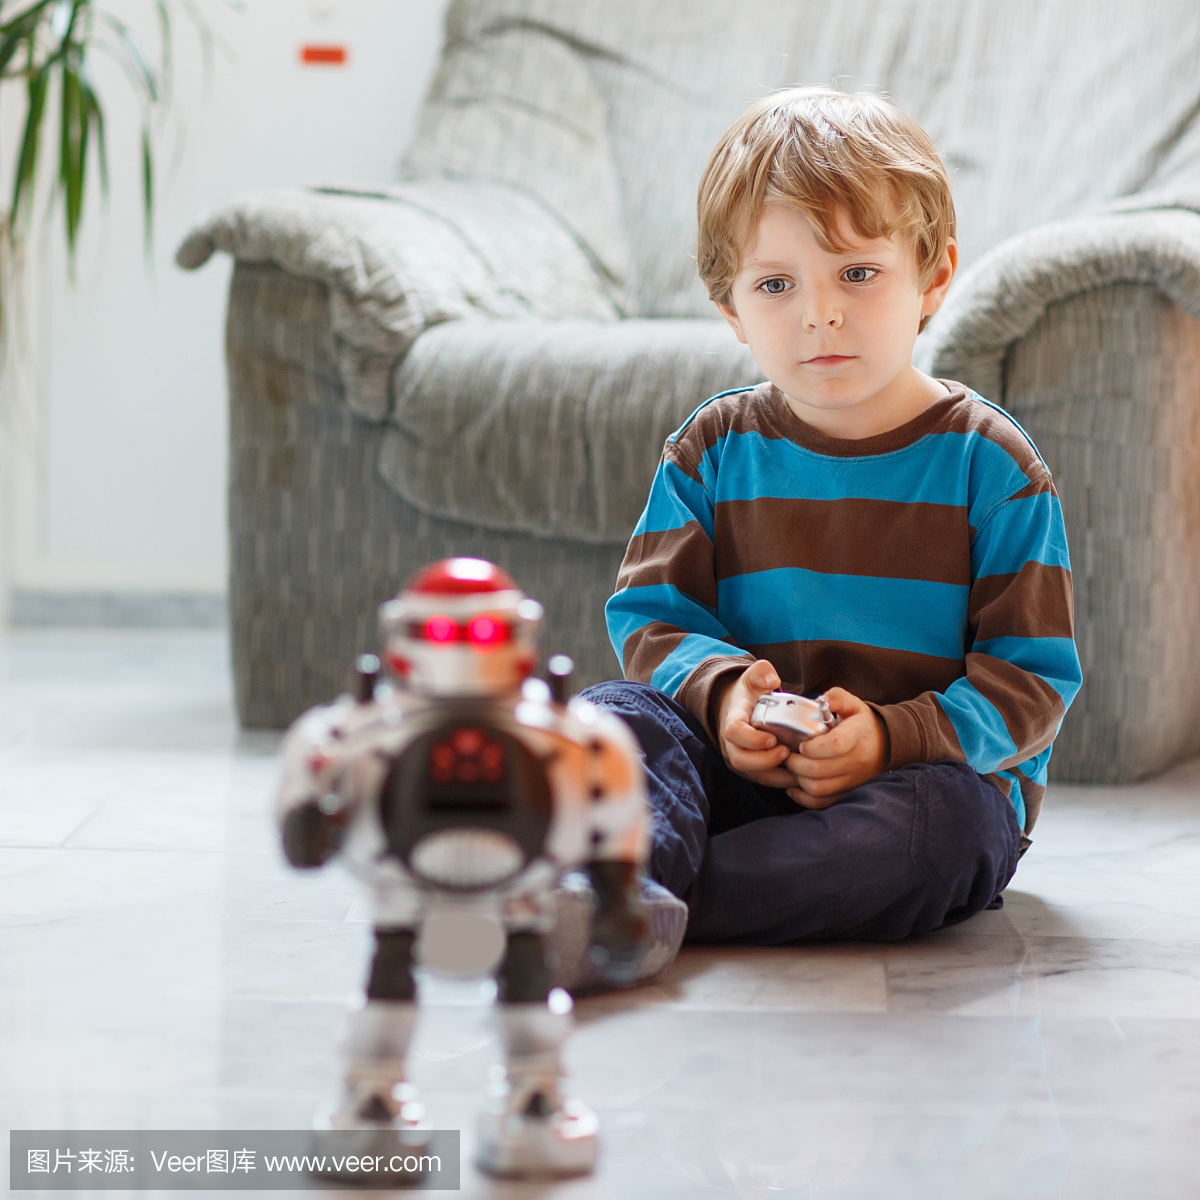 在家里,室内玩机器人玩具的小金发男孩。